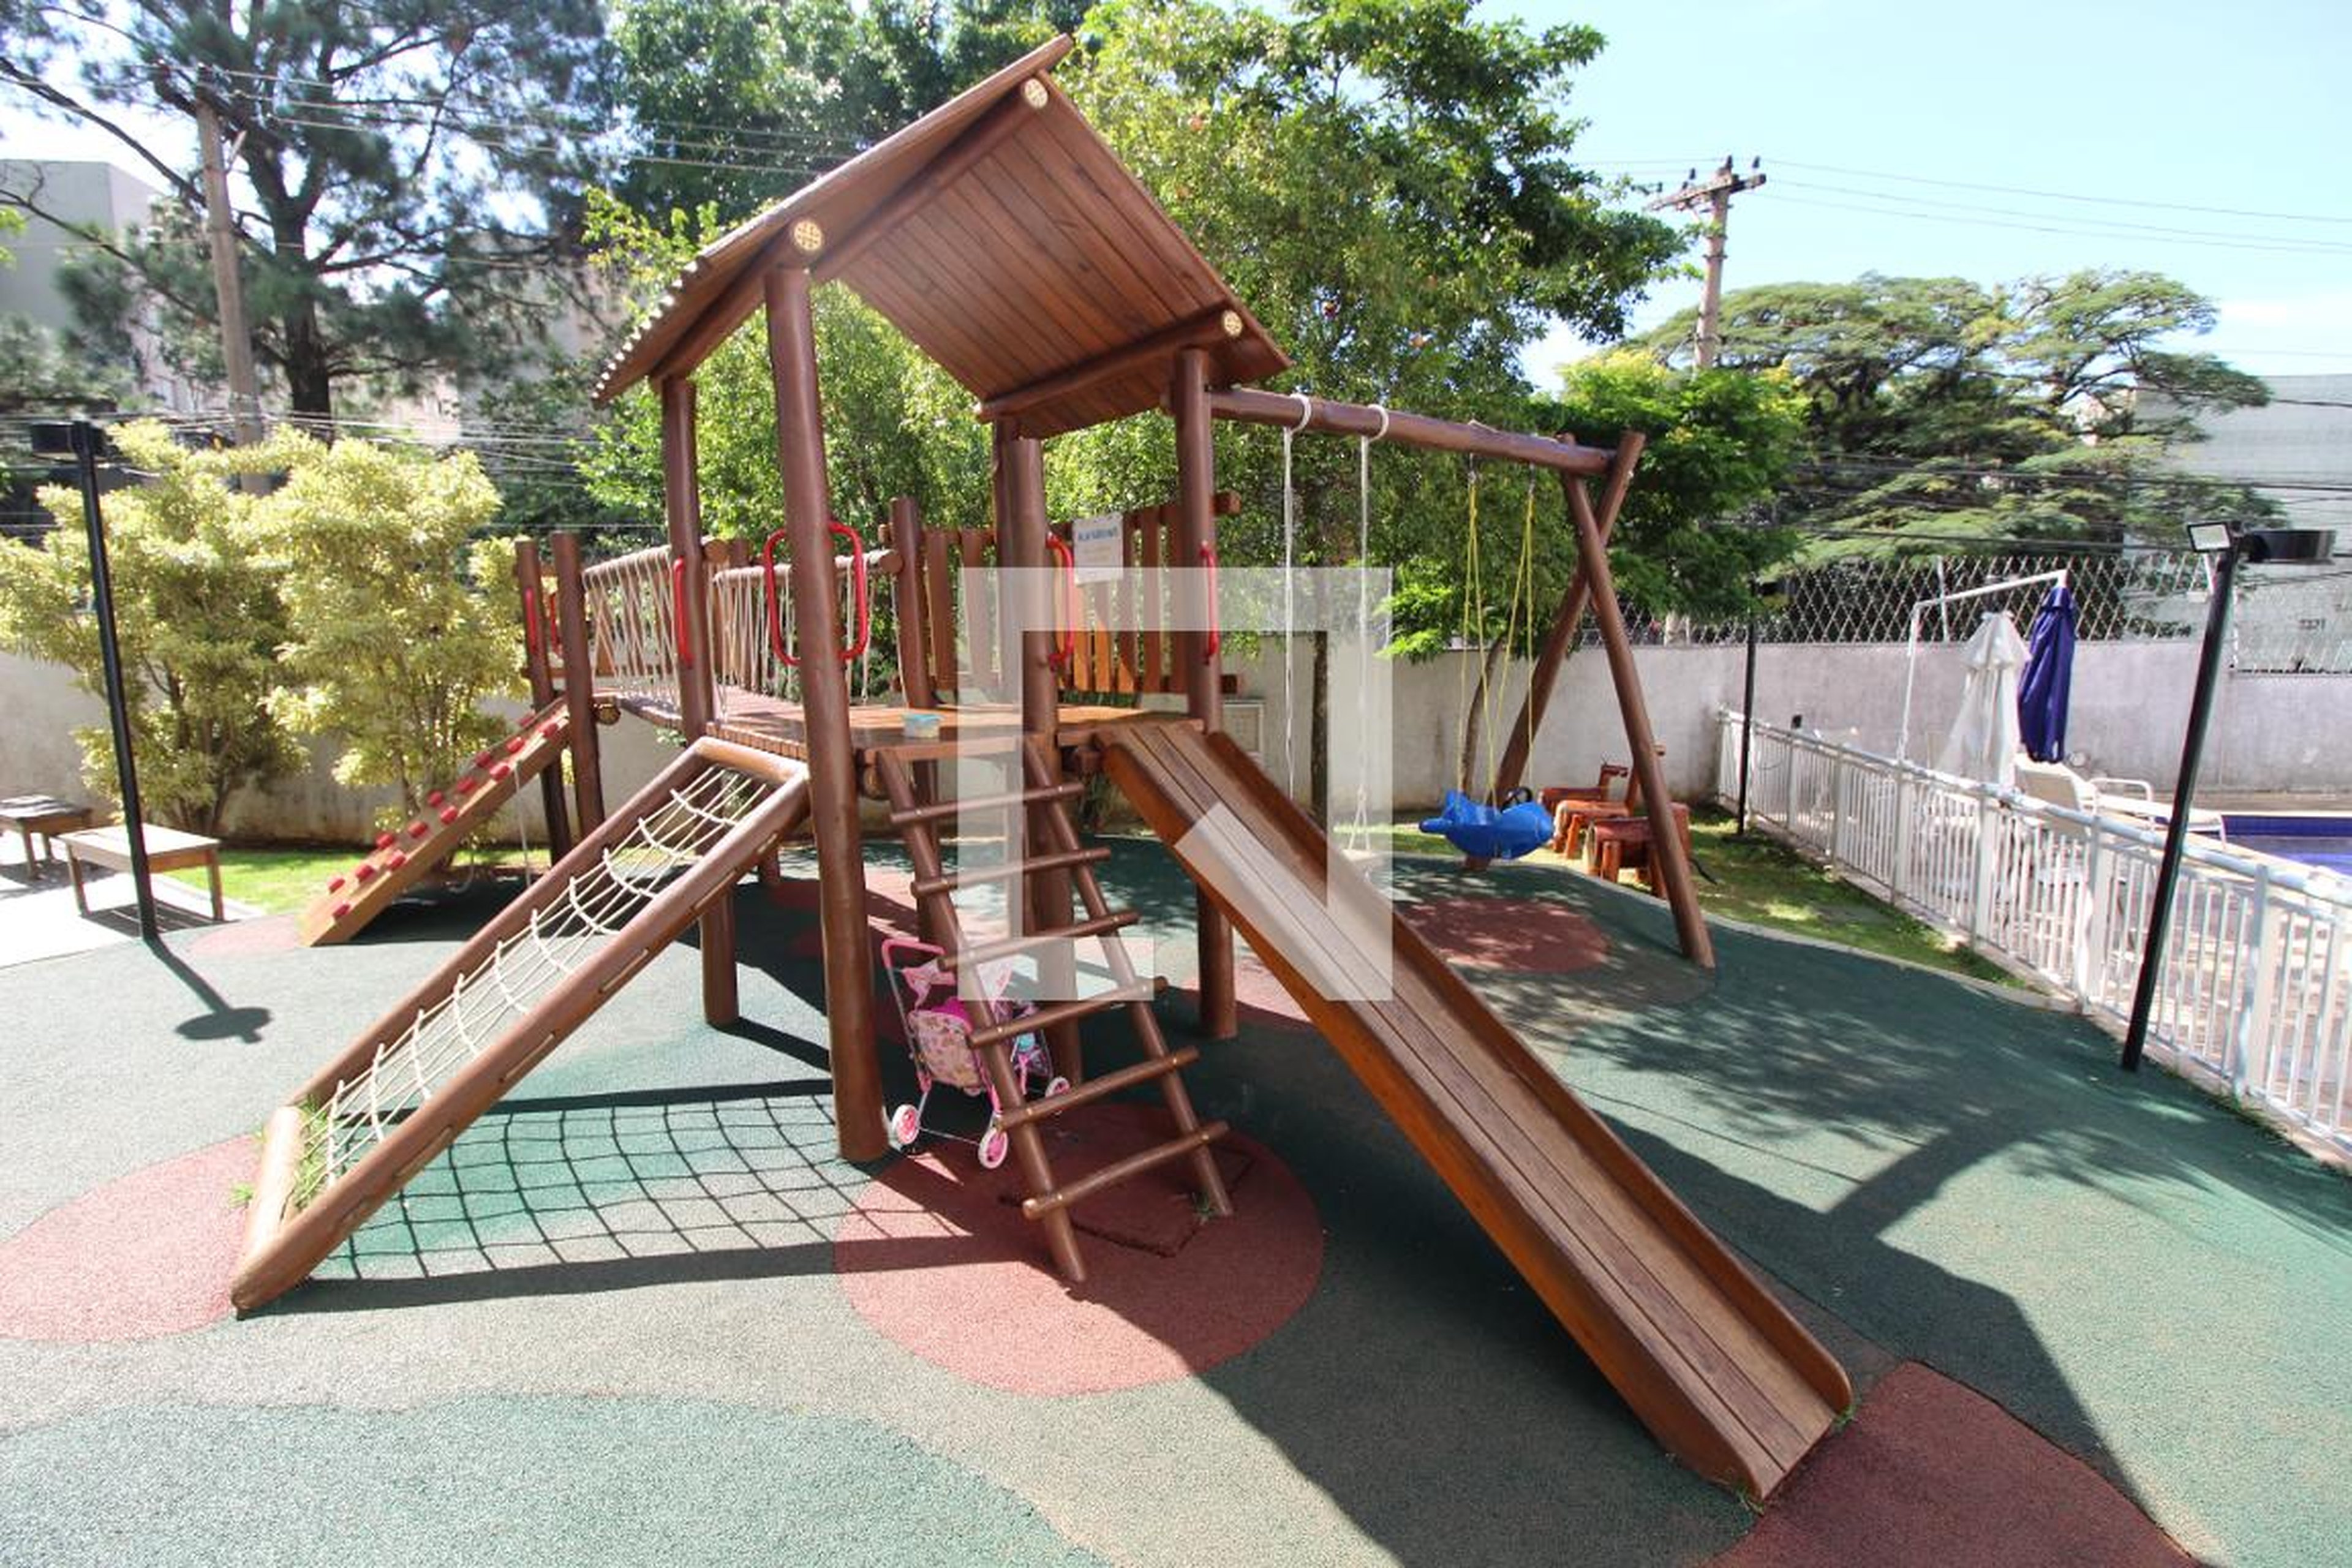 Playground - In São Paulo Vila Boim